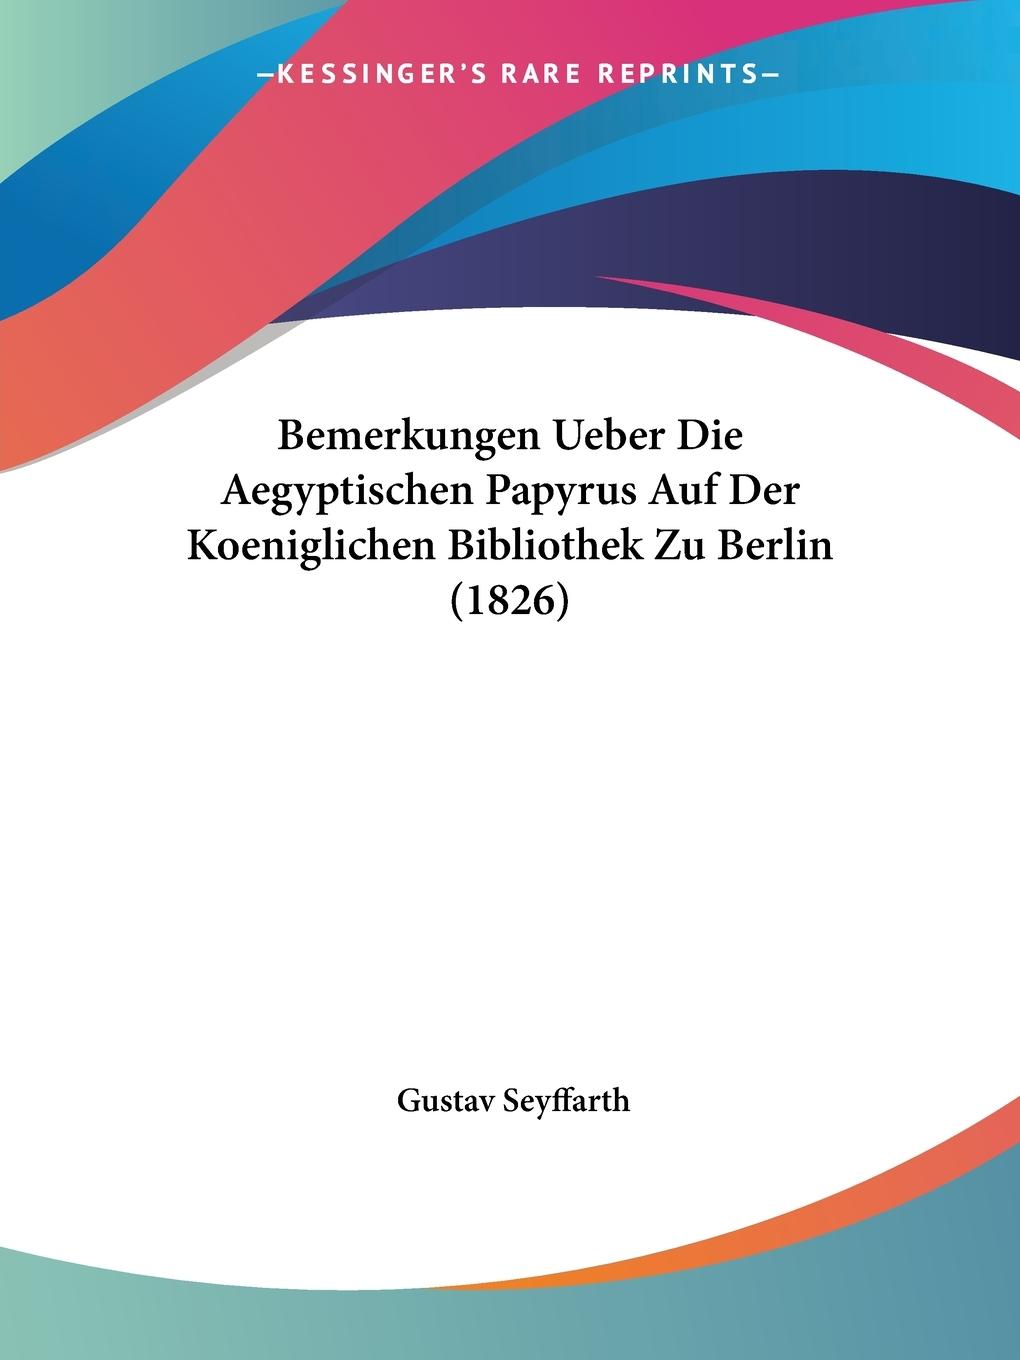 Bemerkungen Ueber Die Aegyptischen Papyrus Auf Der Koeniglichen Bibliothek Zu Berlin (1826) - Seyffarth, Gustav